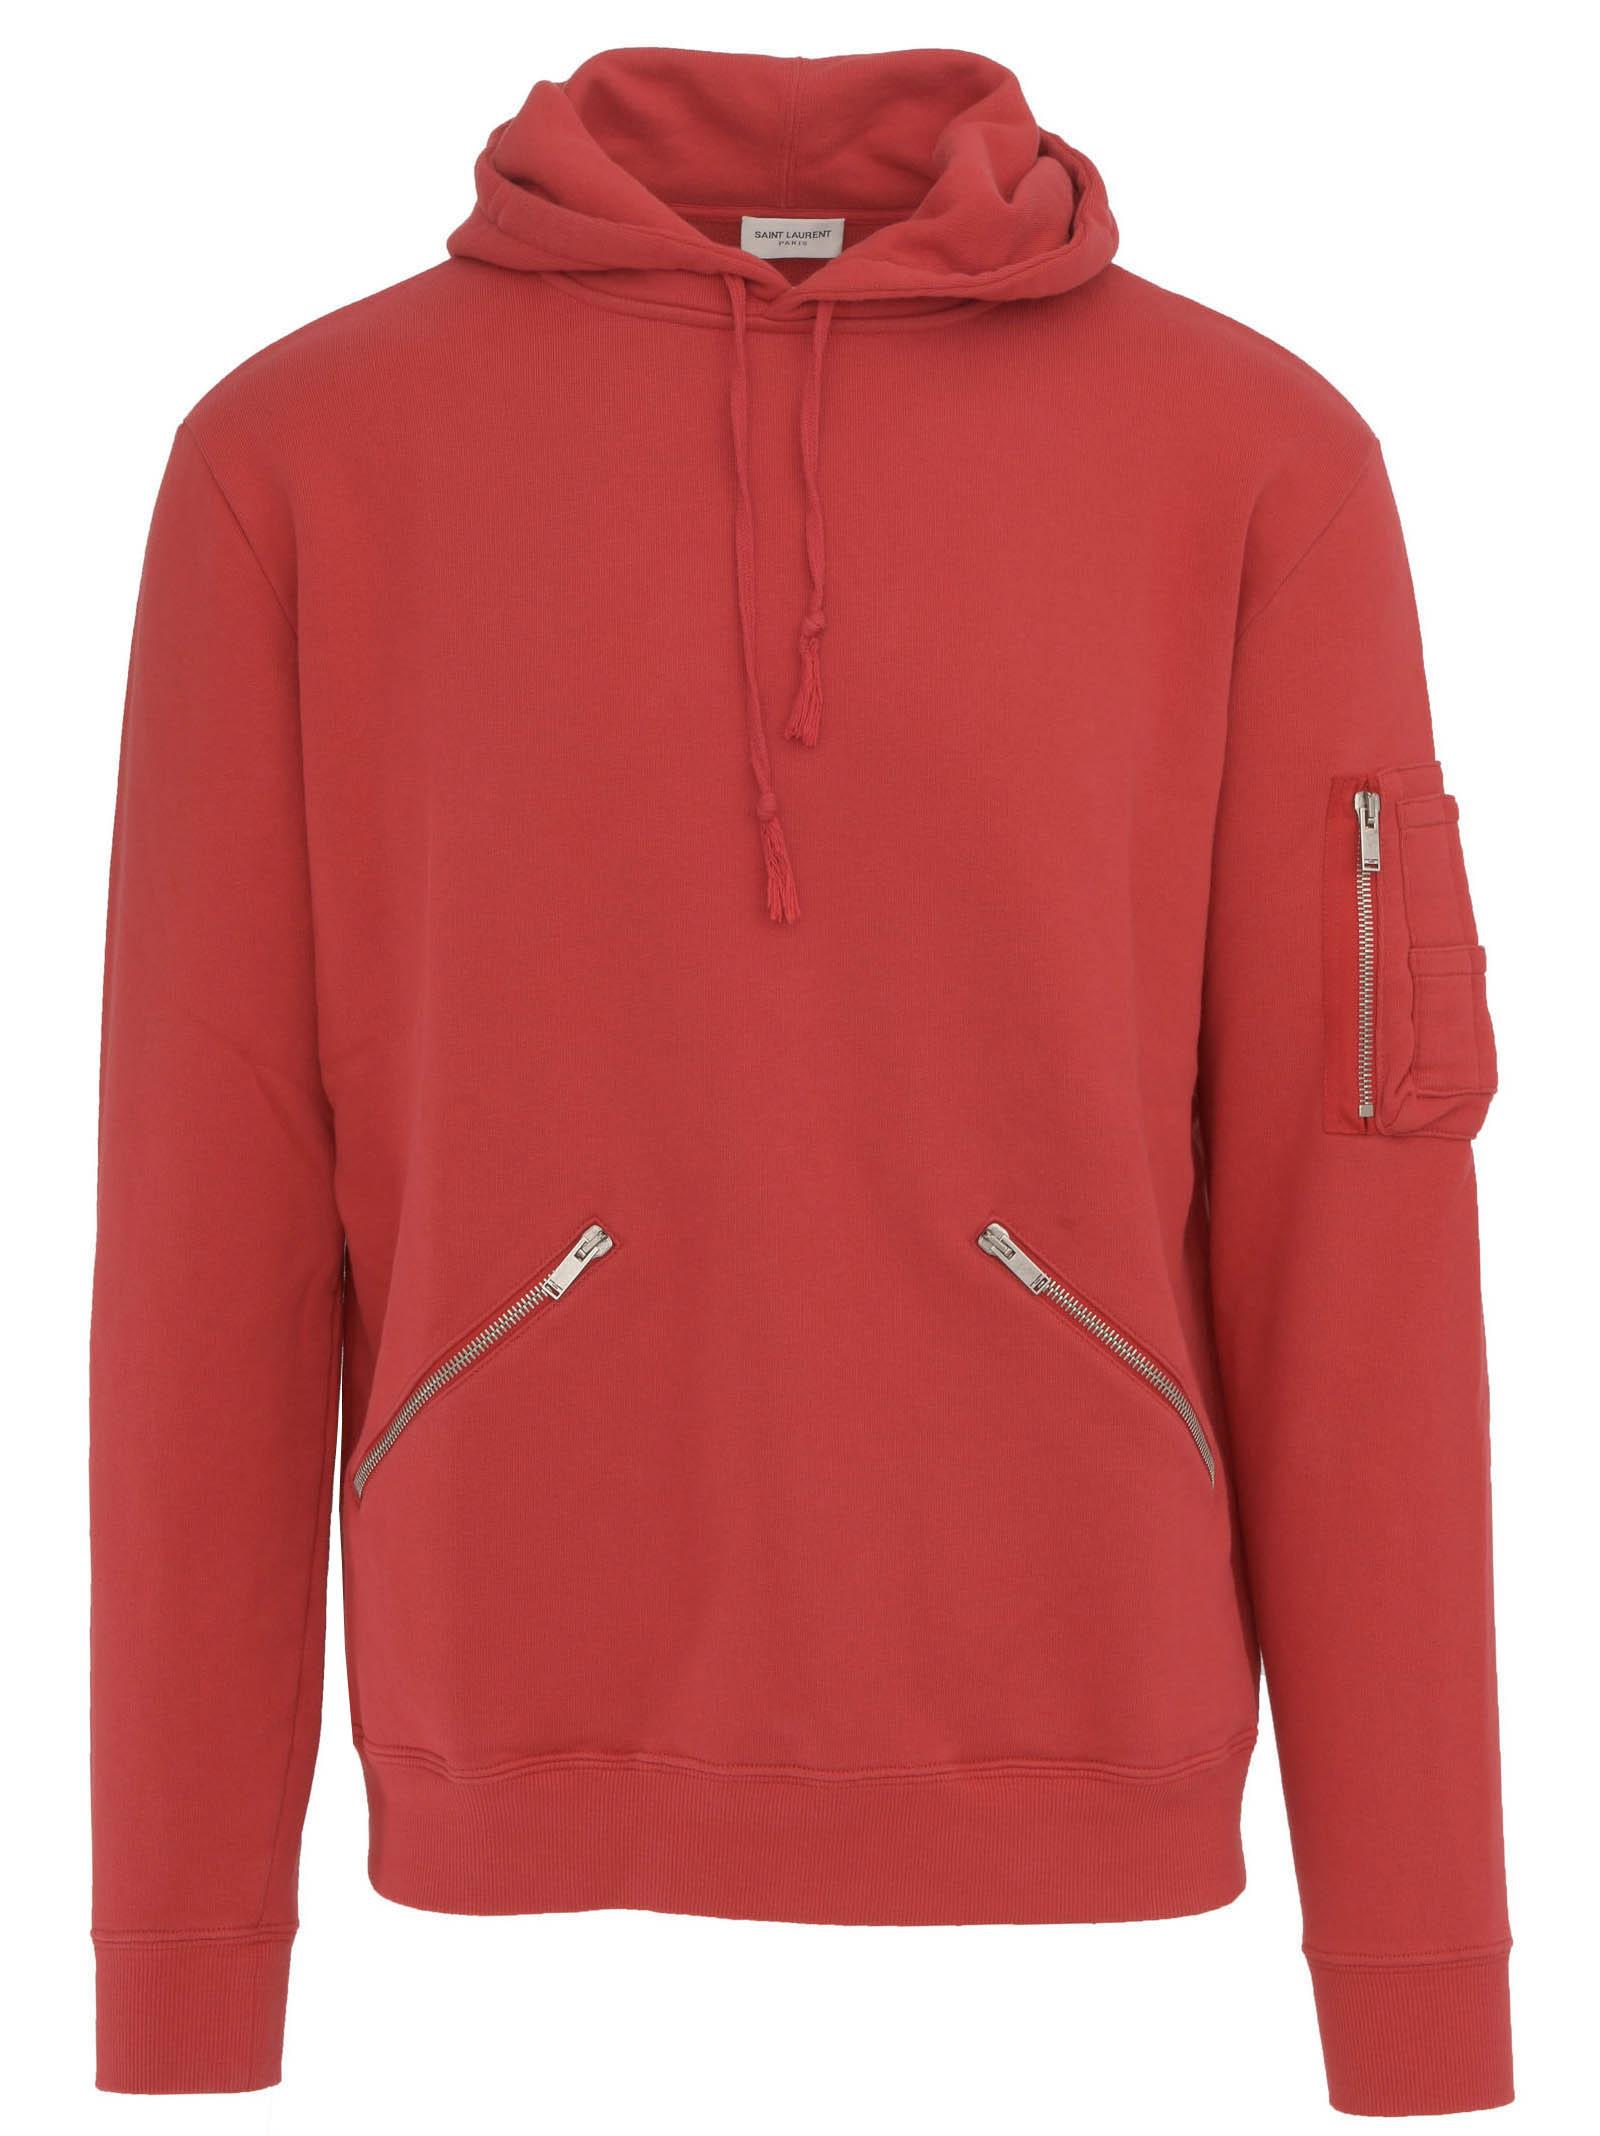 Saint Laurent Cotton Sweatshirt in Red for Men - Lyst